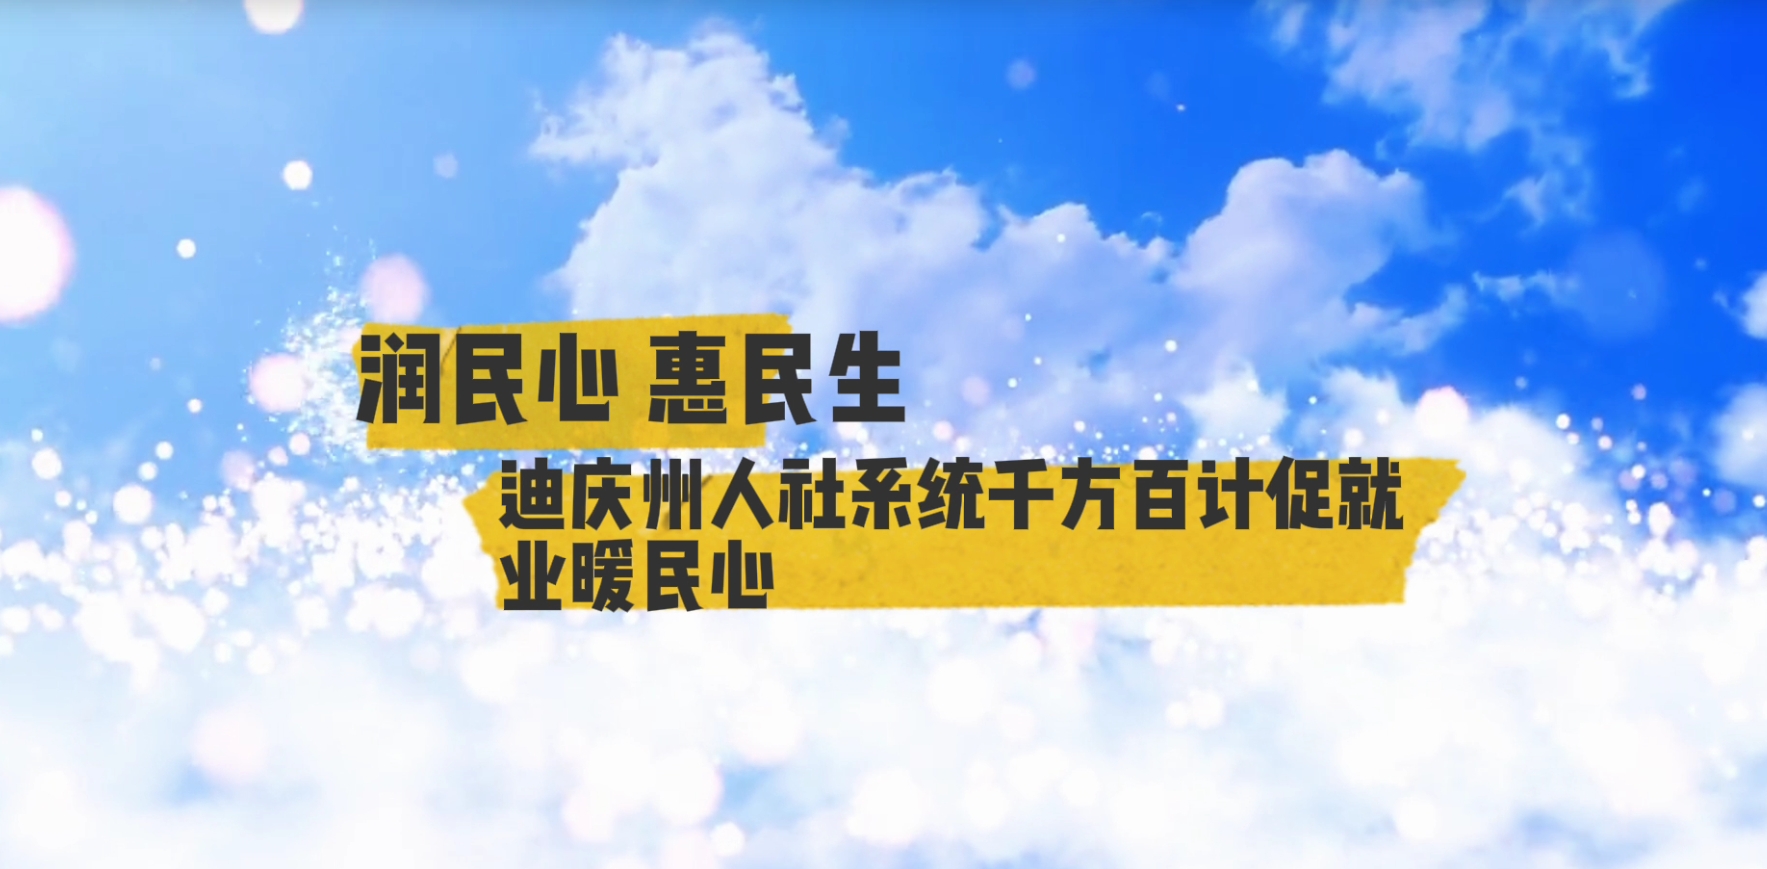 【润民心 惠民生】第7期 迪庆州人社系统千方百计促就业暖民心